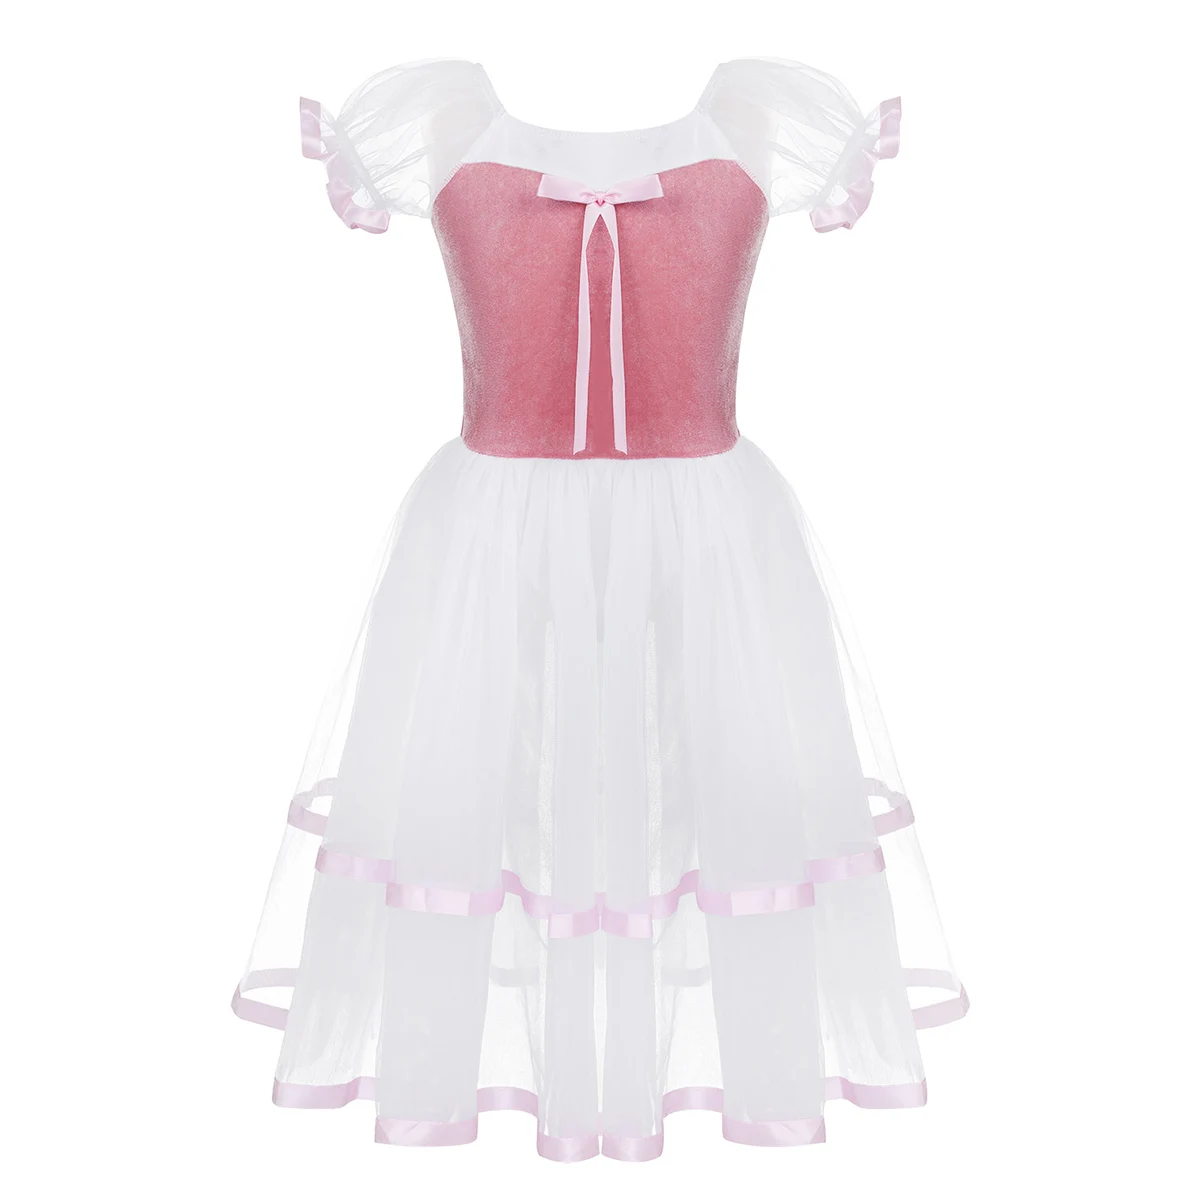 TiaoBug/детское ажурное бархатное платье с пышными рукавами и лифом для девочек, профессиональное платье-трико для балета с пачкой, длинное платье, детский костюм для лирического танца - Цвет: Pink